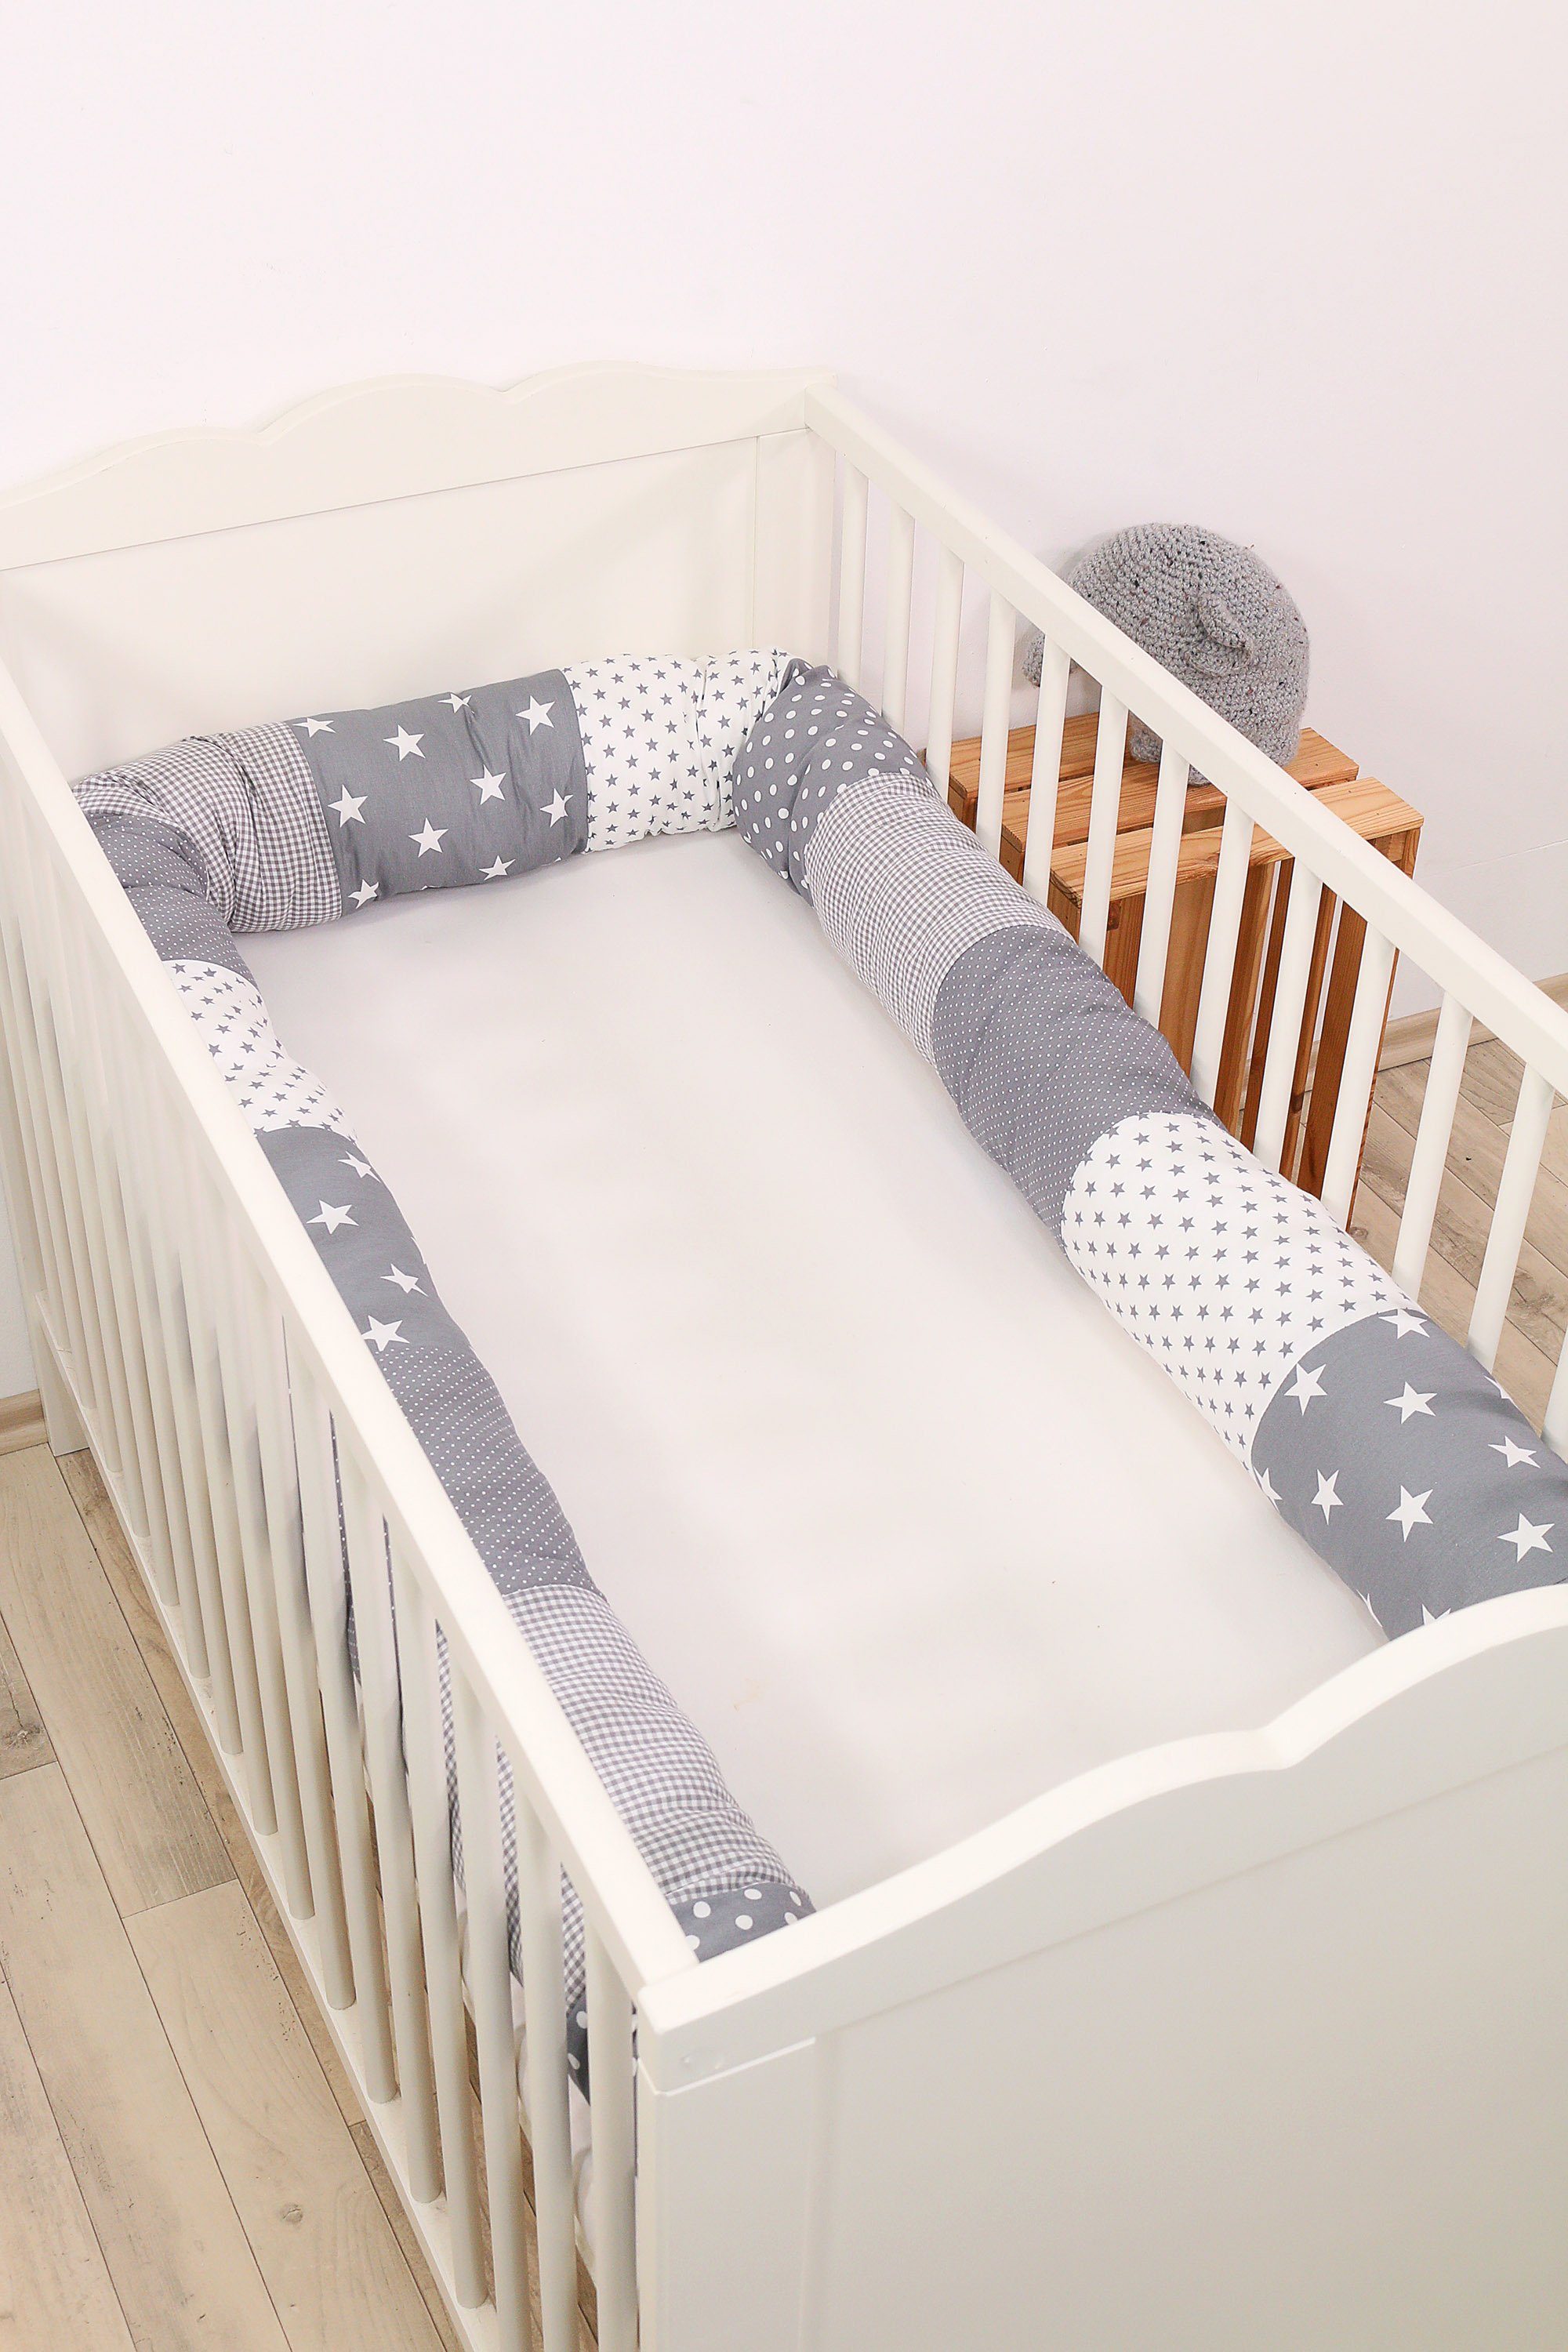 Bettschlange Nestchen für Babybett mit Sternen in Altrosa und Grau 